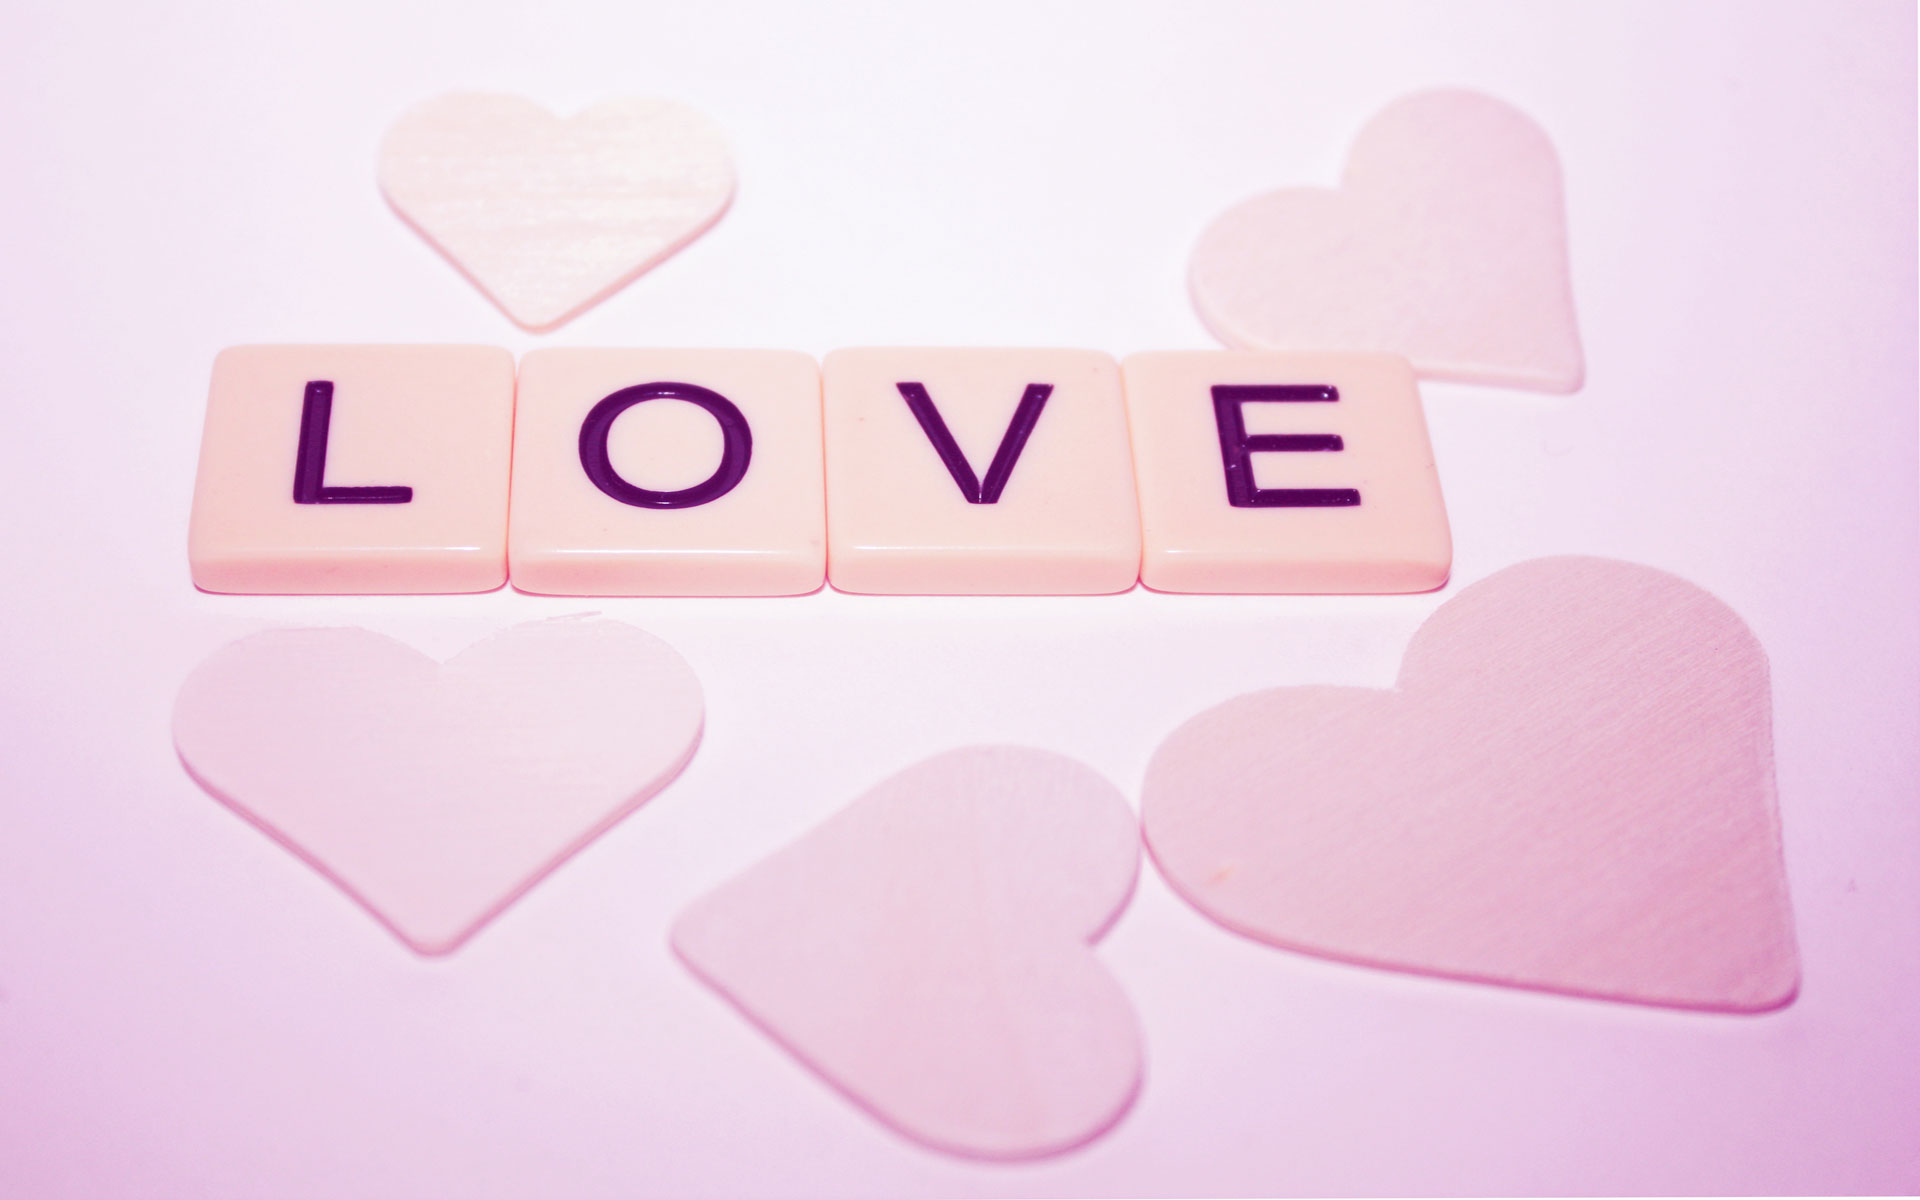 Scrabble love: Bạn đang tìm kiếm một cách độc đáo để thể hiện tình yêu của mình? Bạn sẽ không muốn bỏ qua bức ảnh này. Với Scrabble love, bạn có thể sắp xếp các từ tình yêu và tạo ra một thông điệp đầy ý nghĩa. Hãy cùng chiêm ngưỡng bức ảnh và cảm nhận tình yêu mãnh liệt trong đó.